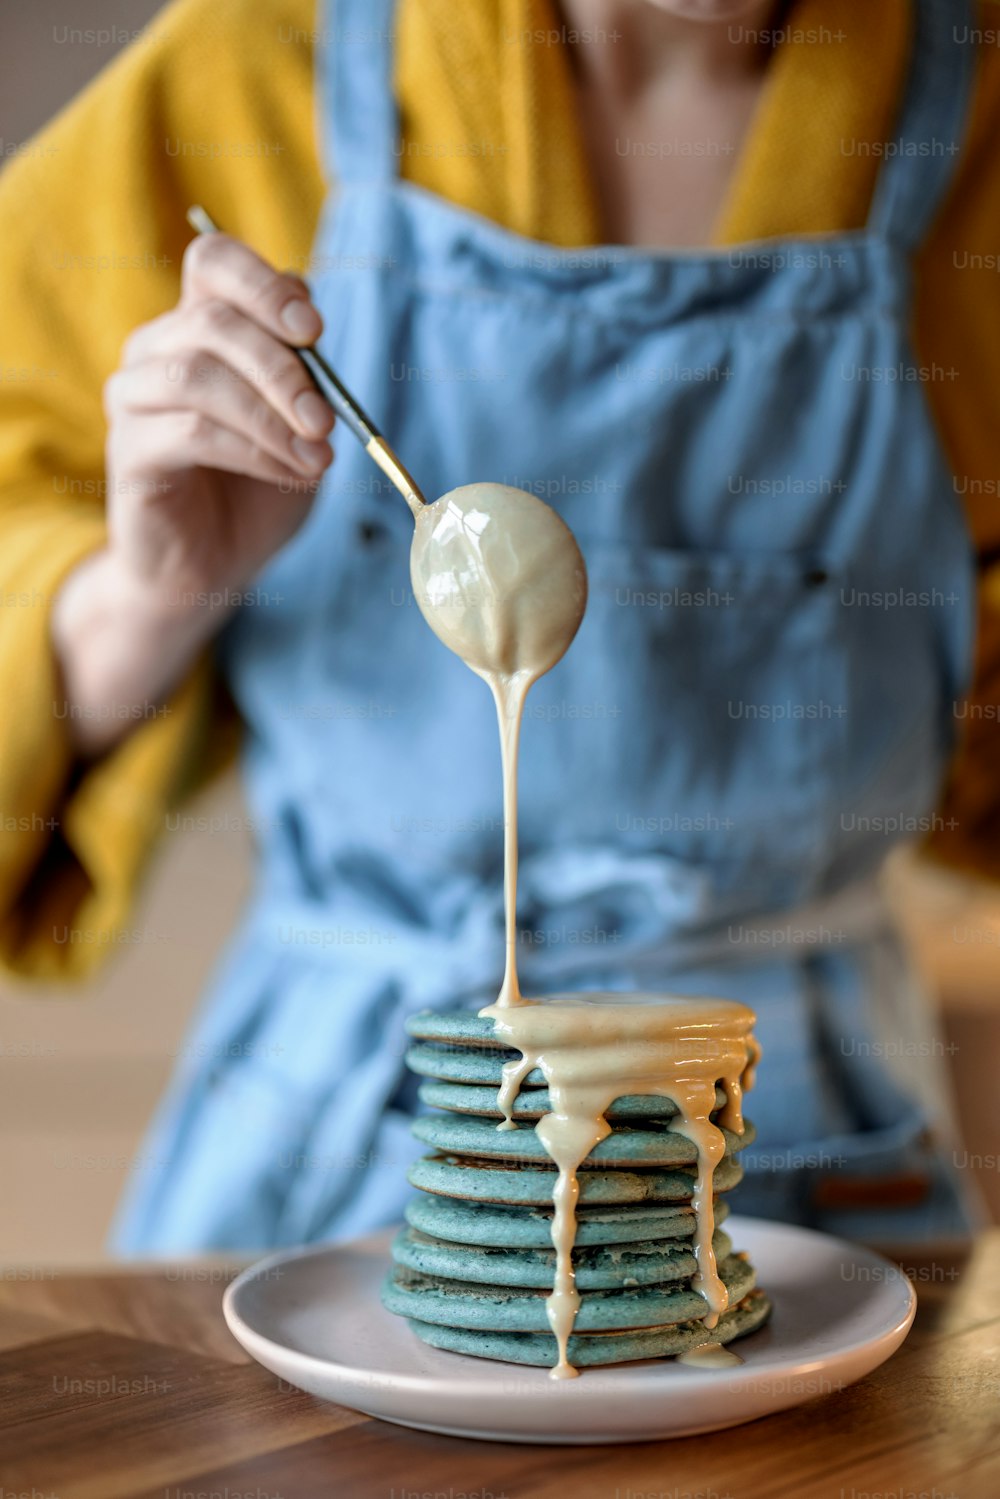 Femme en tablier bleu versant des crêpes bleues avec de la souse au caramel sur une table en bois. Nourriture savoureuse faite maison. Célébration du Gras.